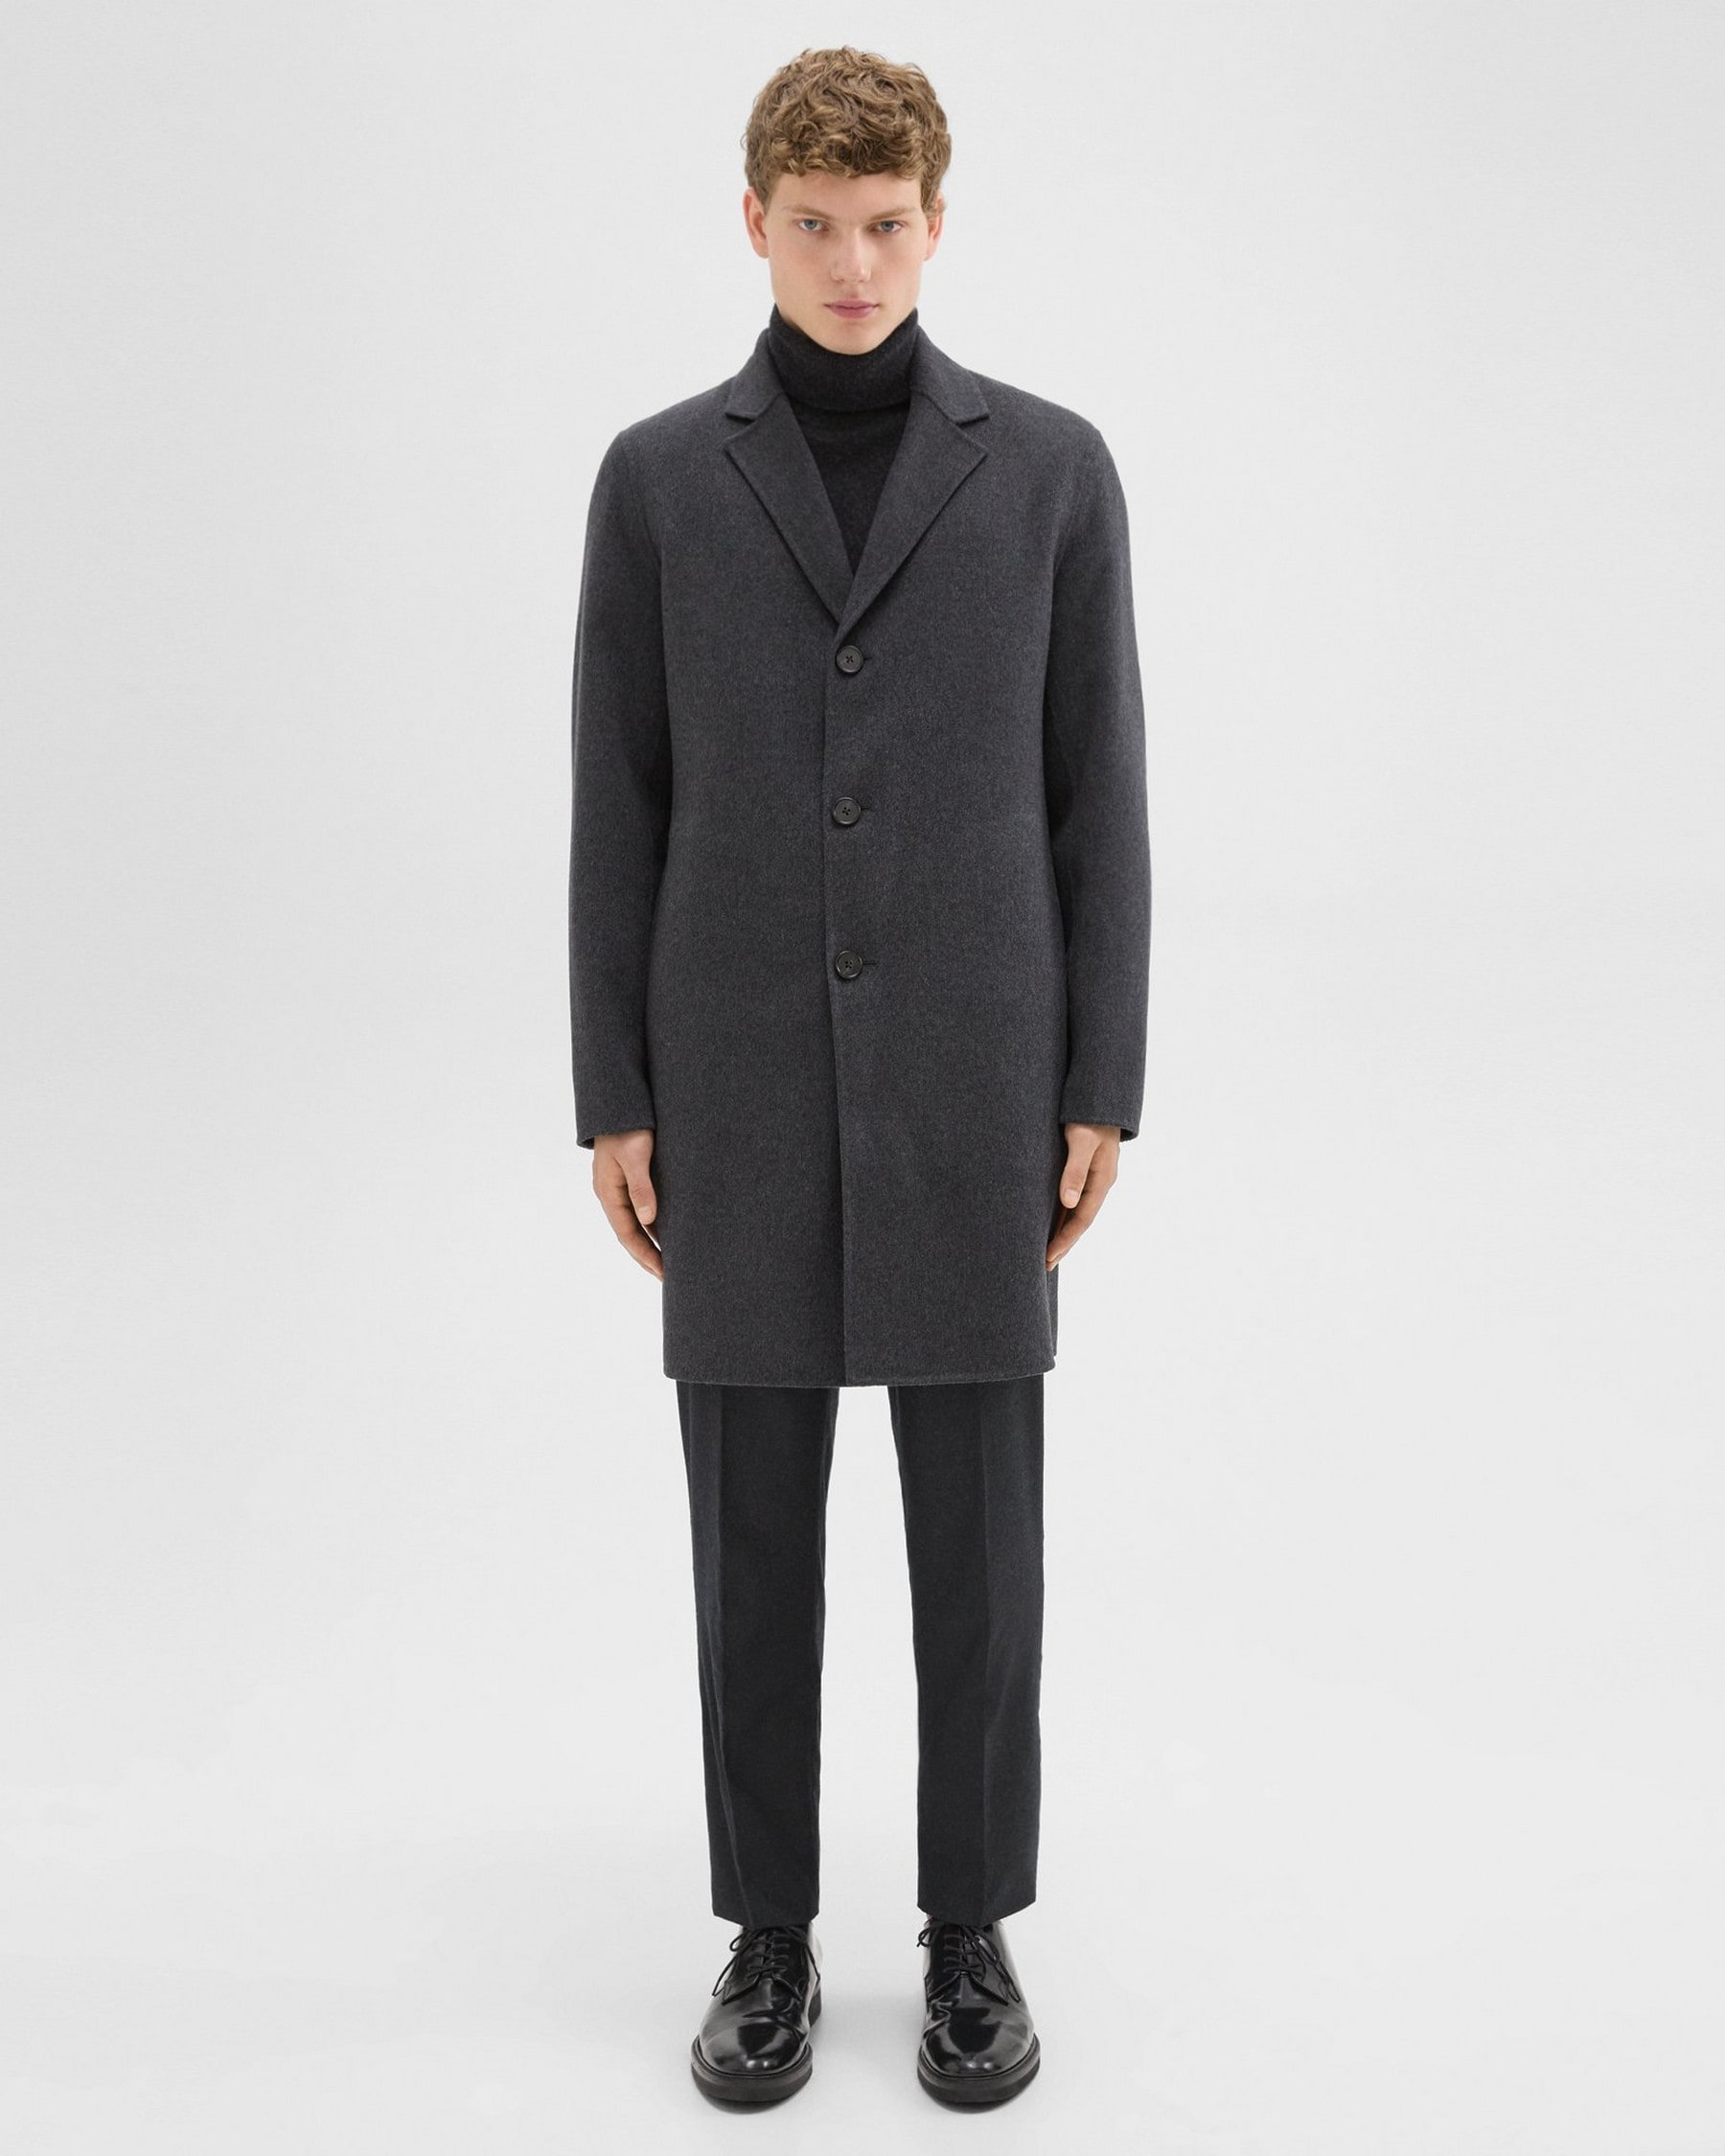 띠어리 Theory Almec Coat in Double-Face Wool-Cashmere,DARK CHARCOAL MELANGE